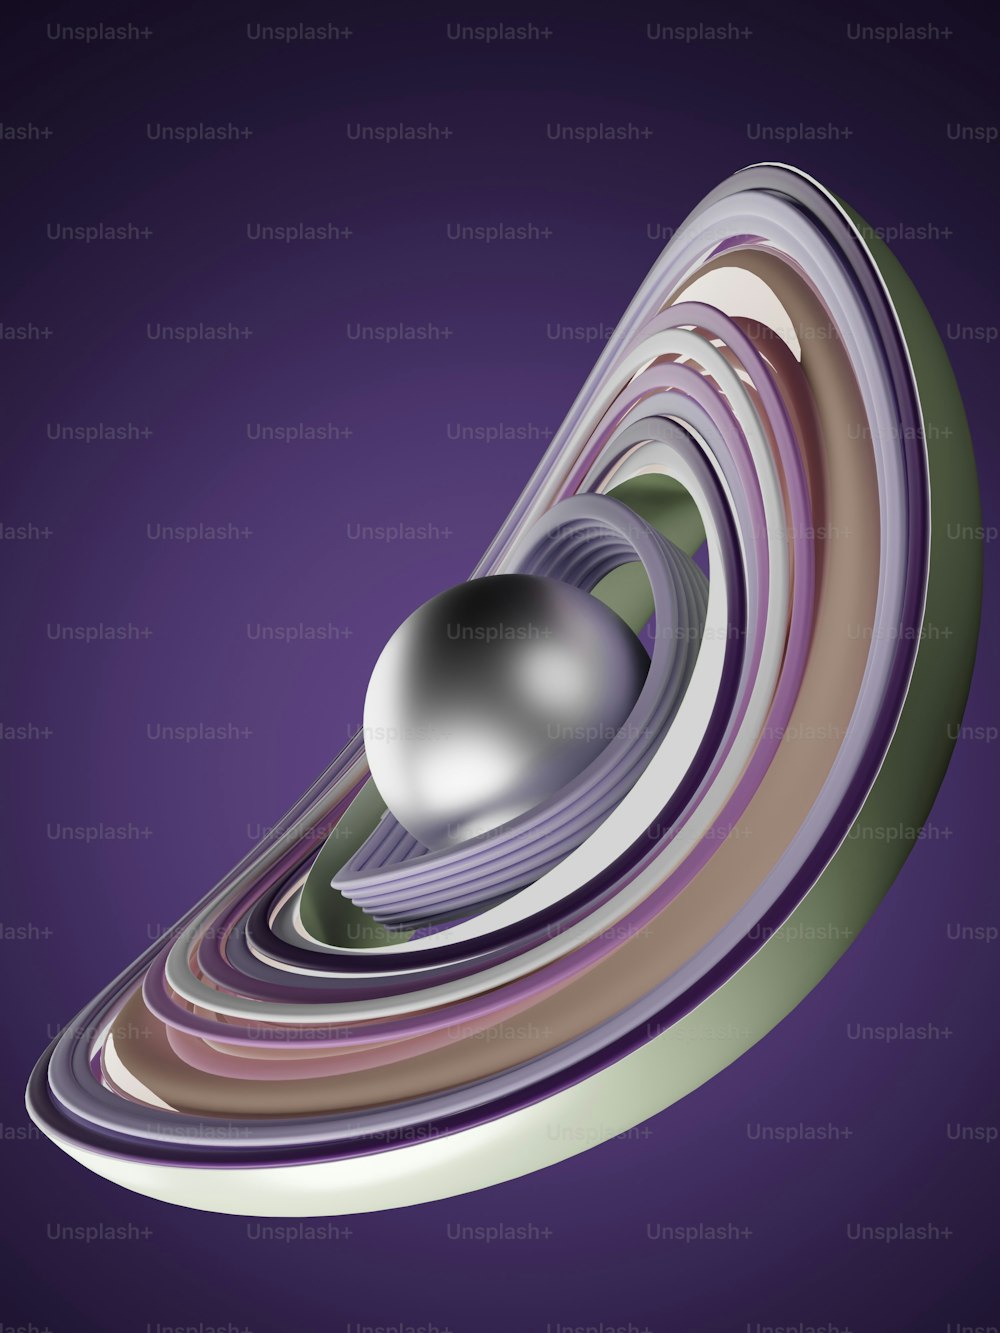 une image générée par ordinateur d’une sphère